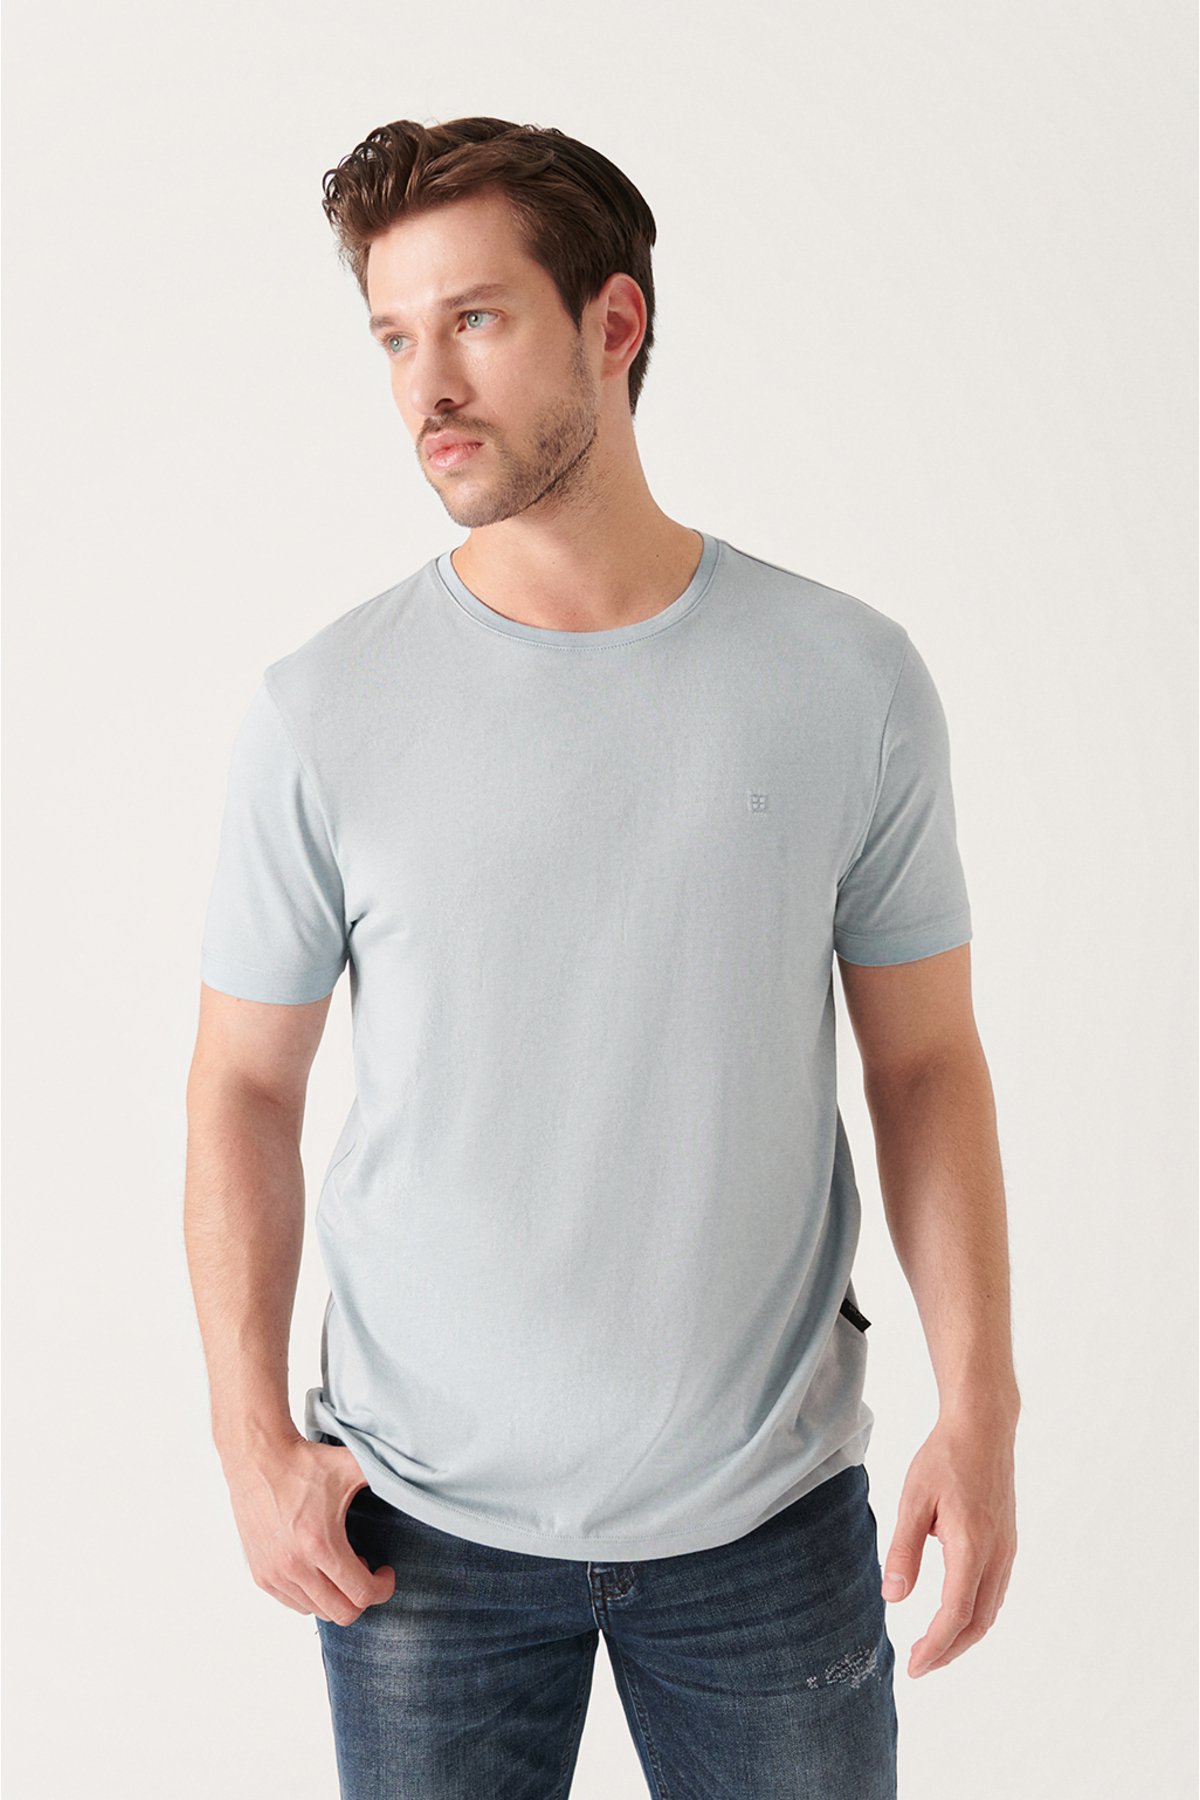 Avva Men's Gray Ultrasoft Crew Neck Plain Regular Fit Modal T-shirt